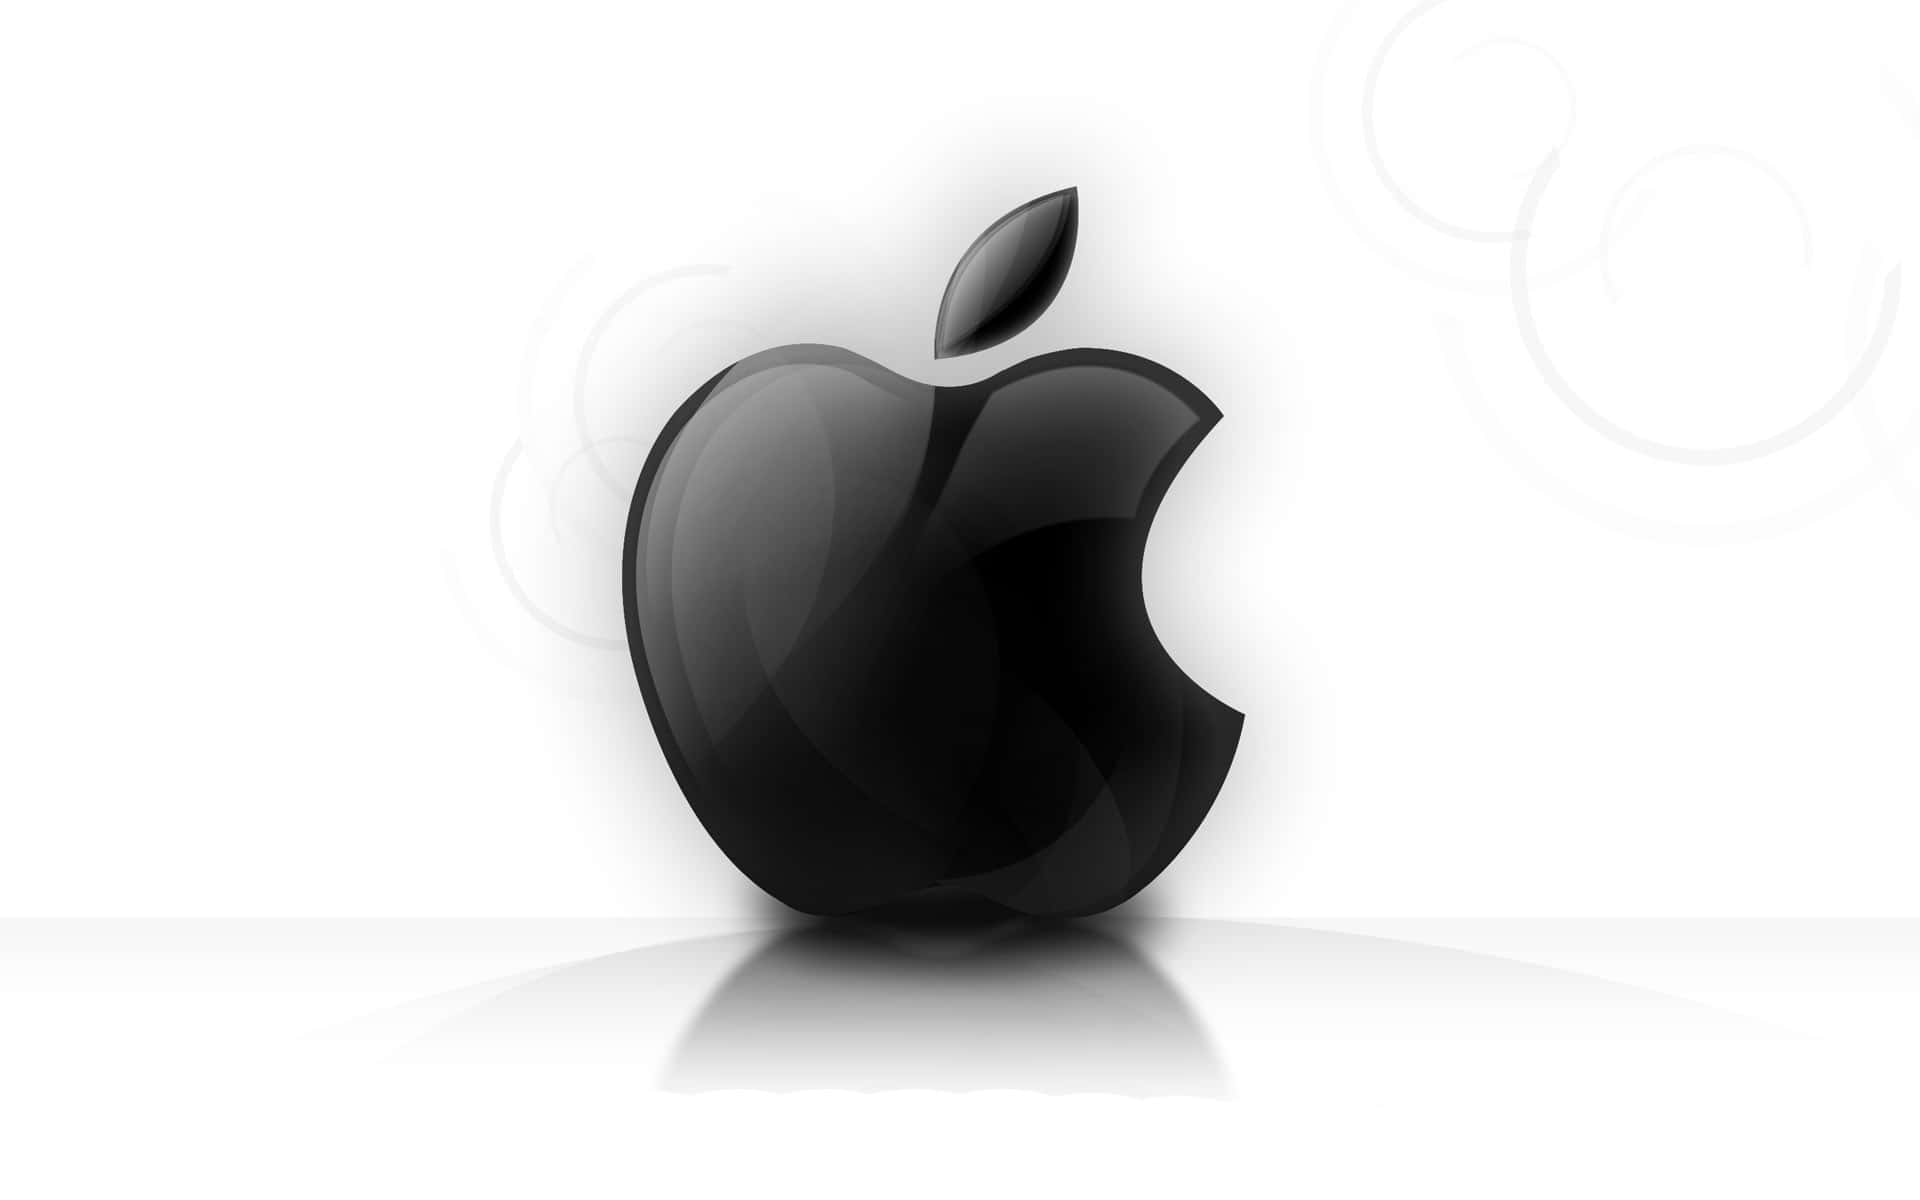 Nuevoiphone X Con El Logotipo De Apple. Fondo de pantalla